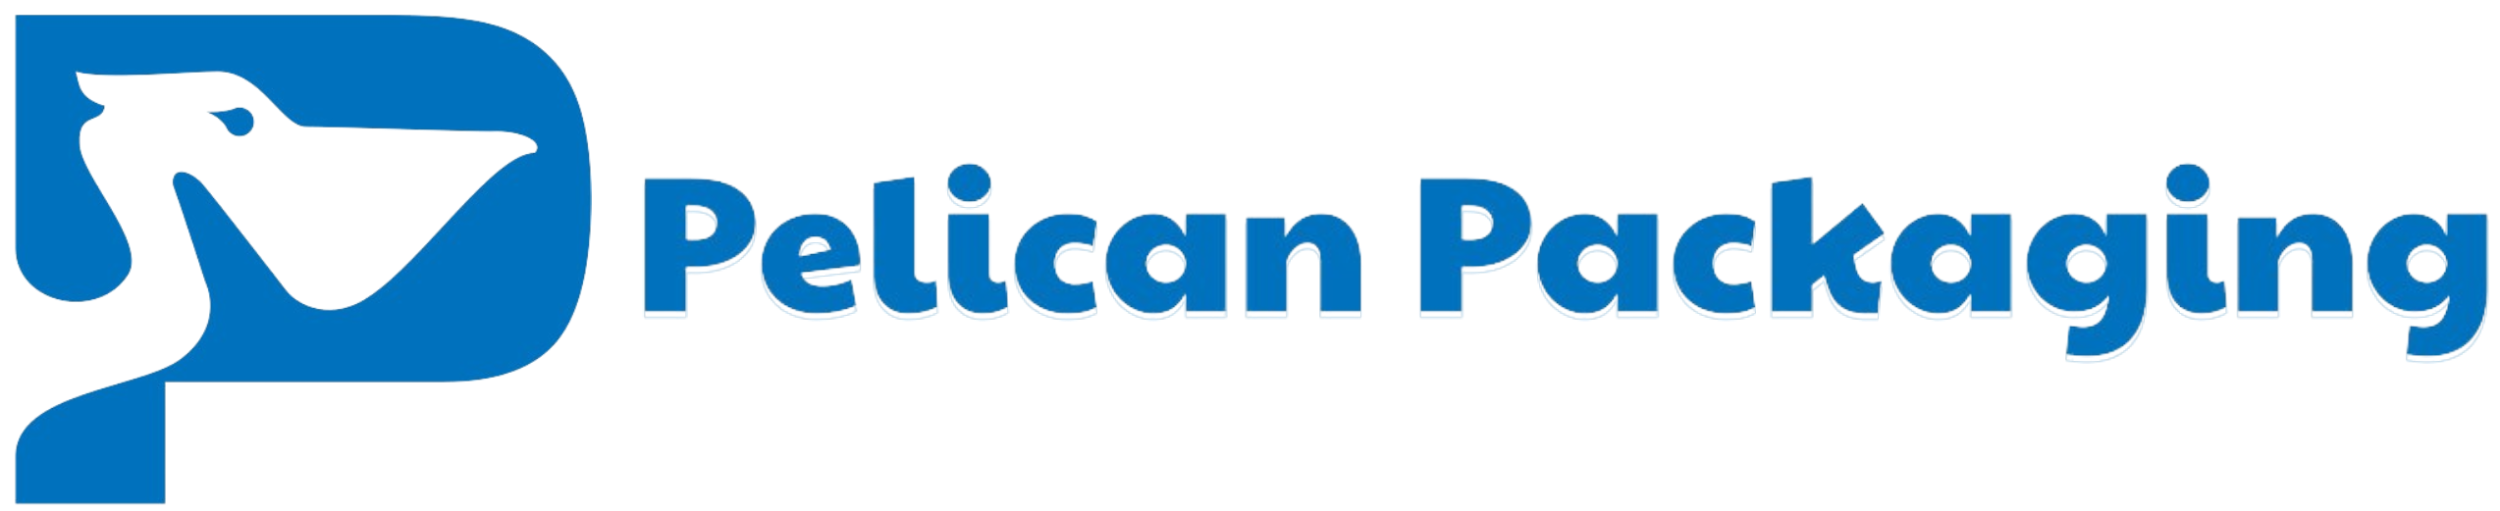 Pelican Packaging